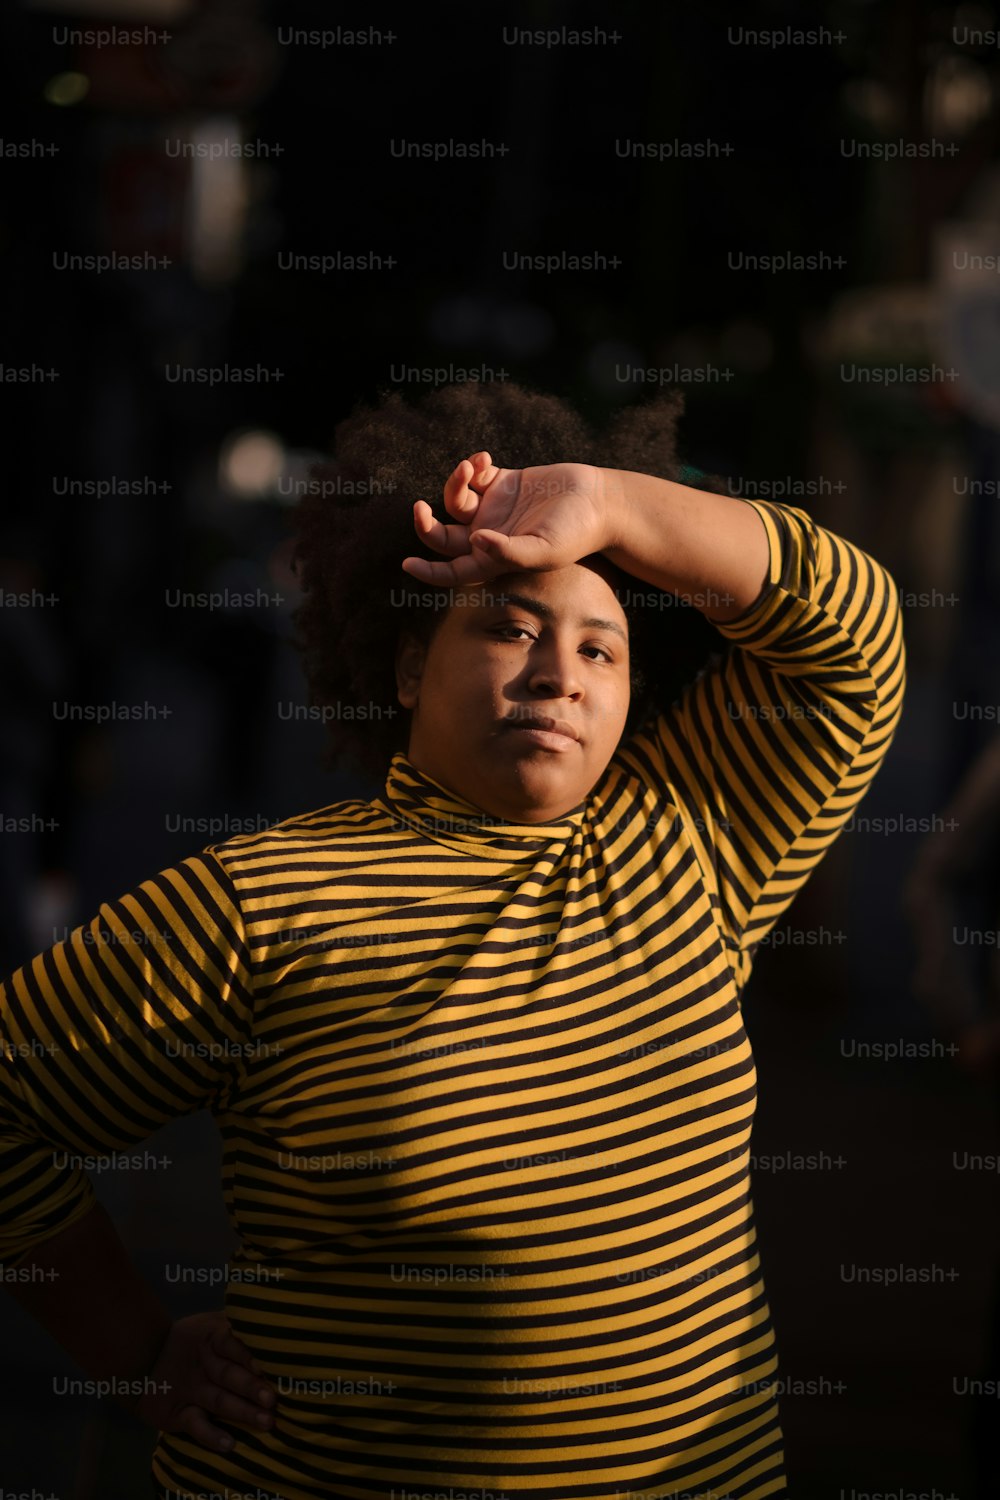 Una donna in una camicia a righe gialle e nere